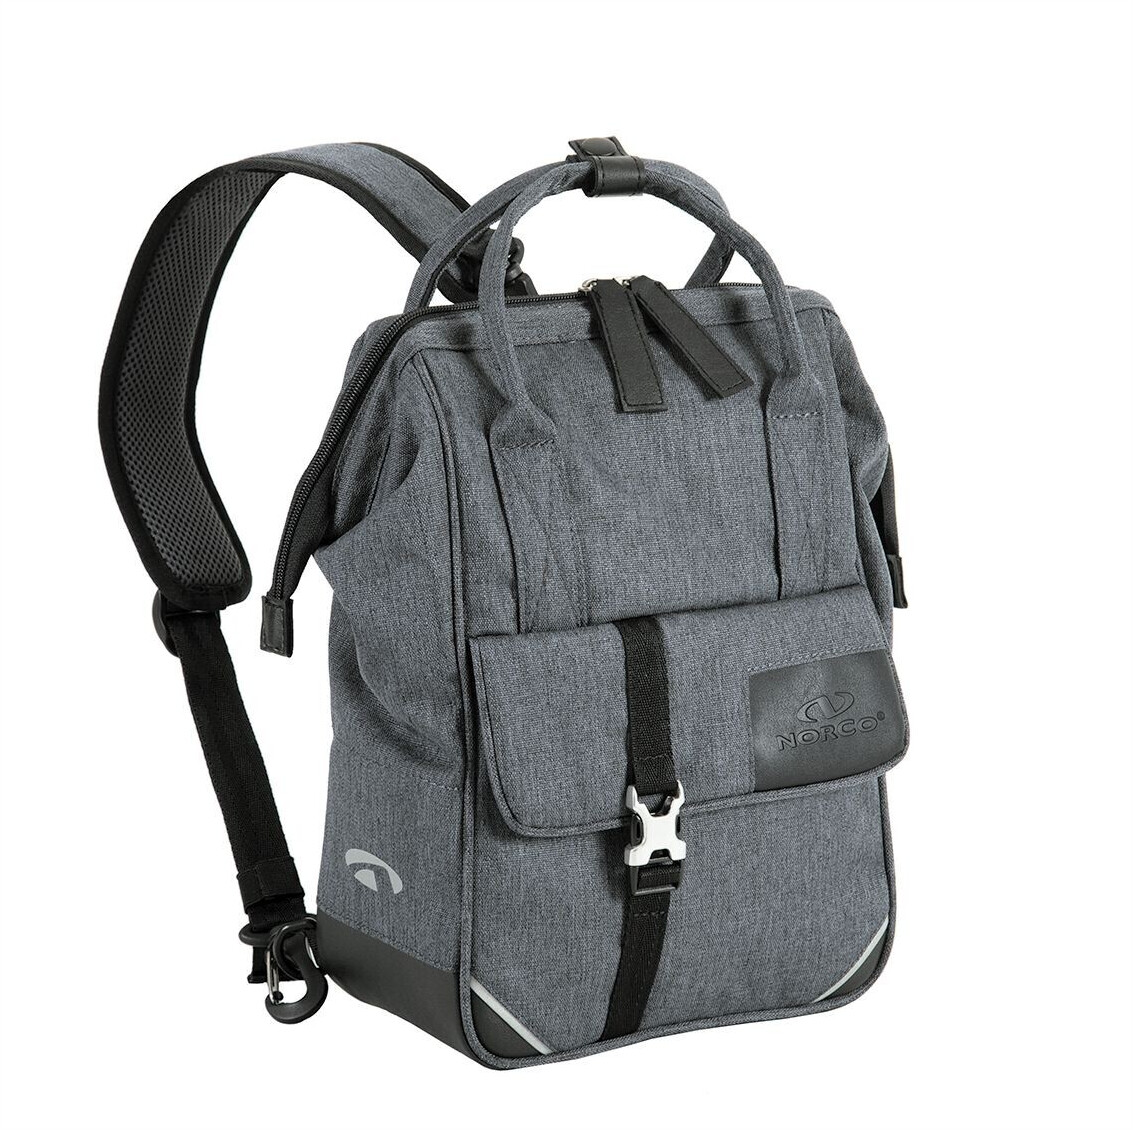 Norco TAYBURY Backpack tweed grey ab 79,95 € | Preisvergleich bei